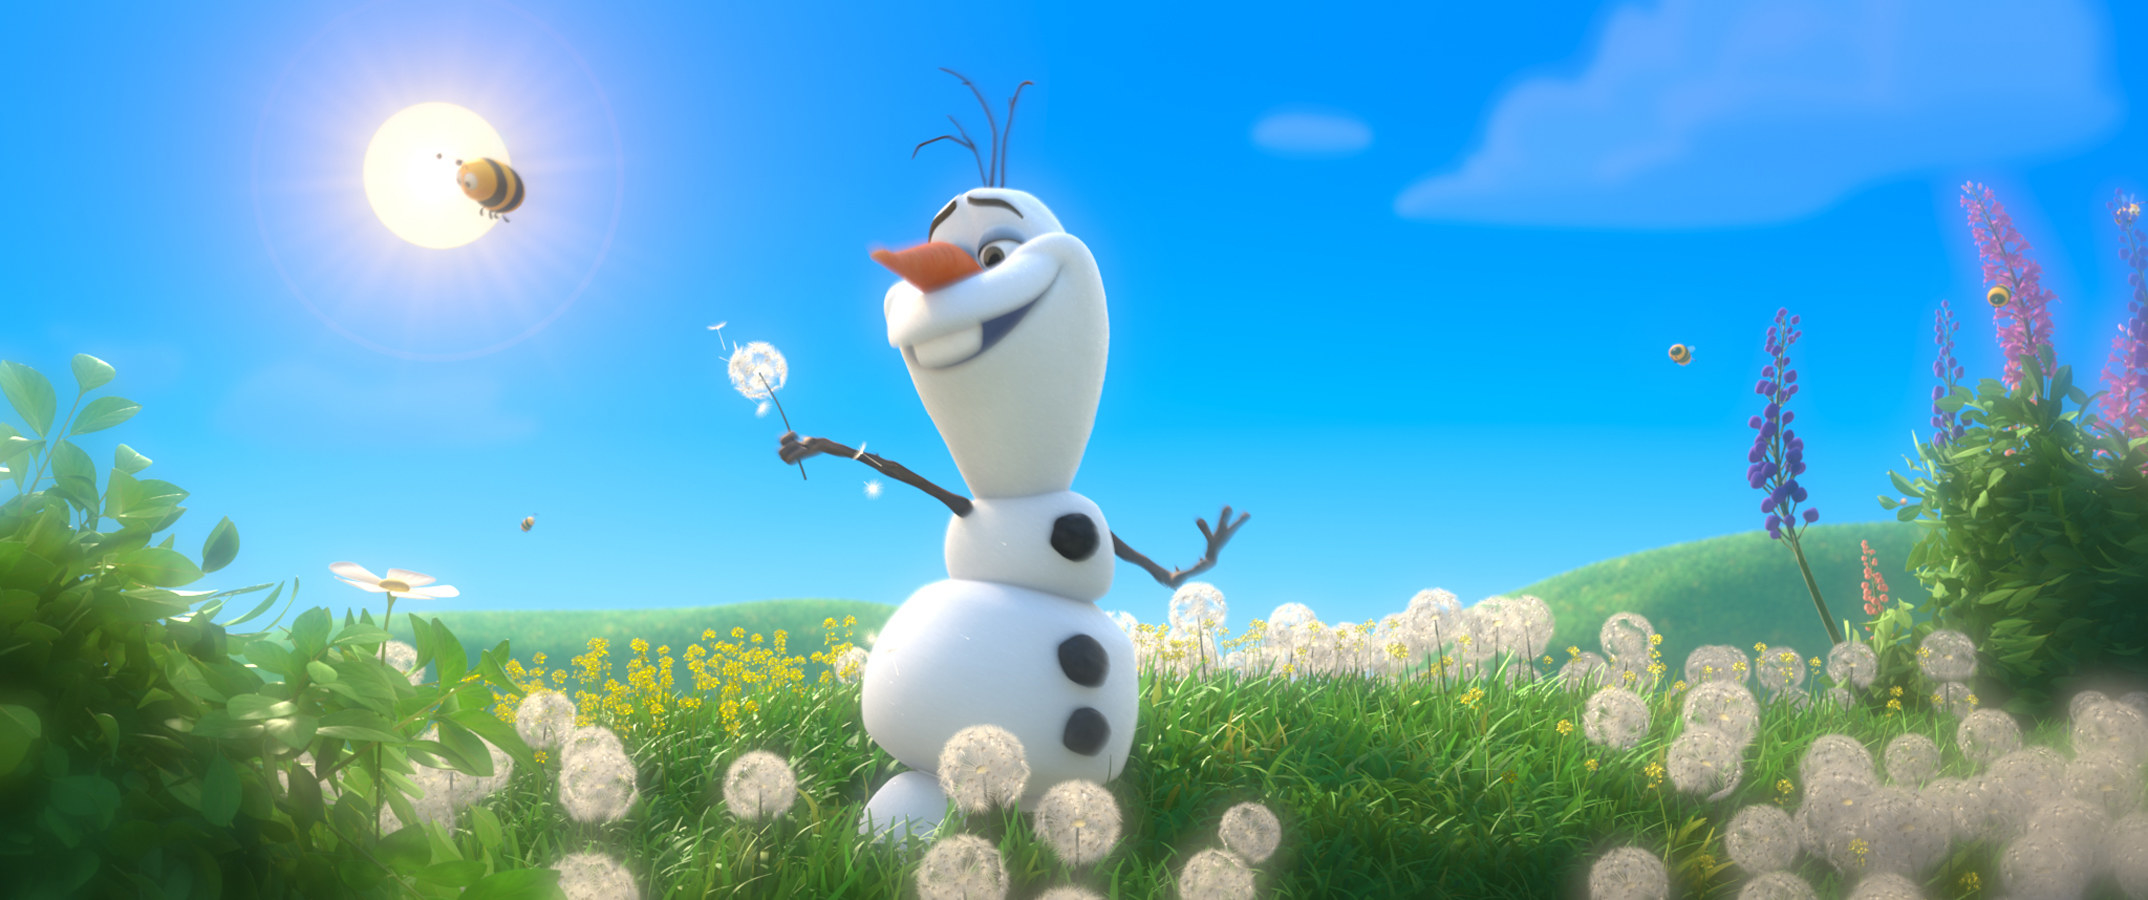 A snowman dances in the sun